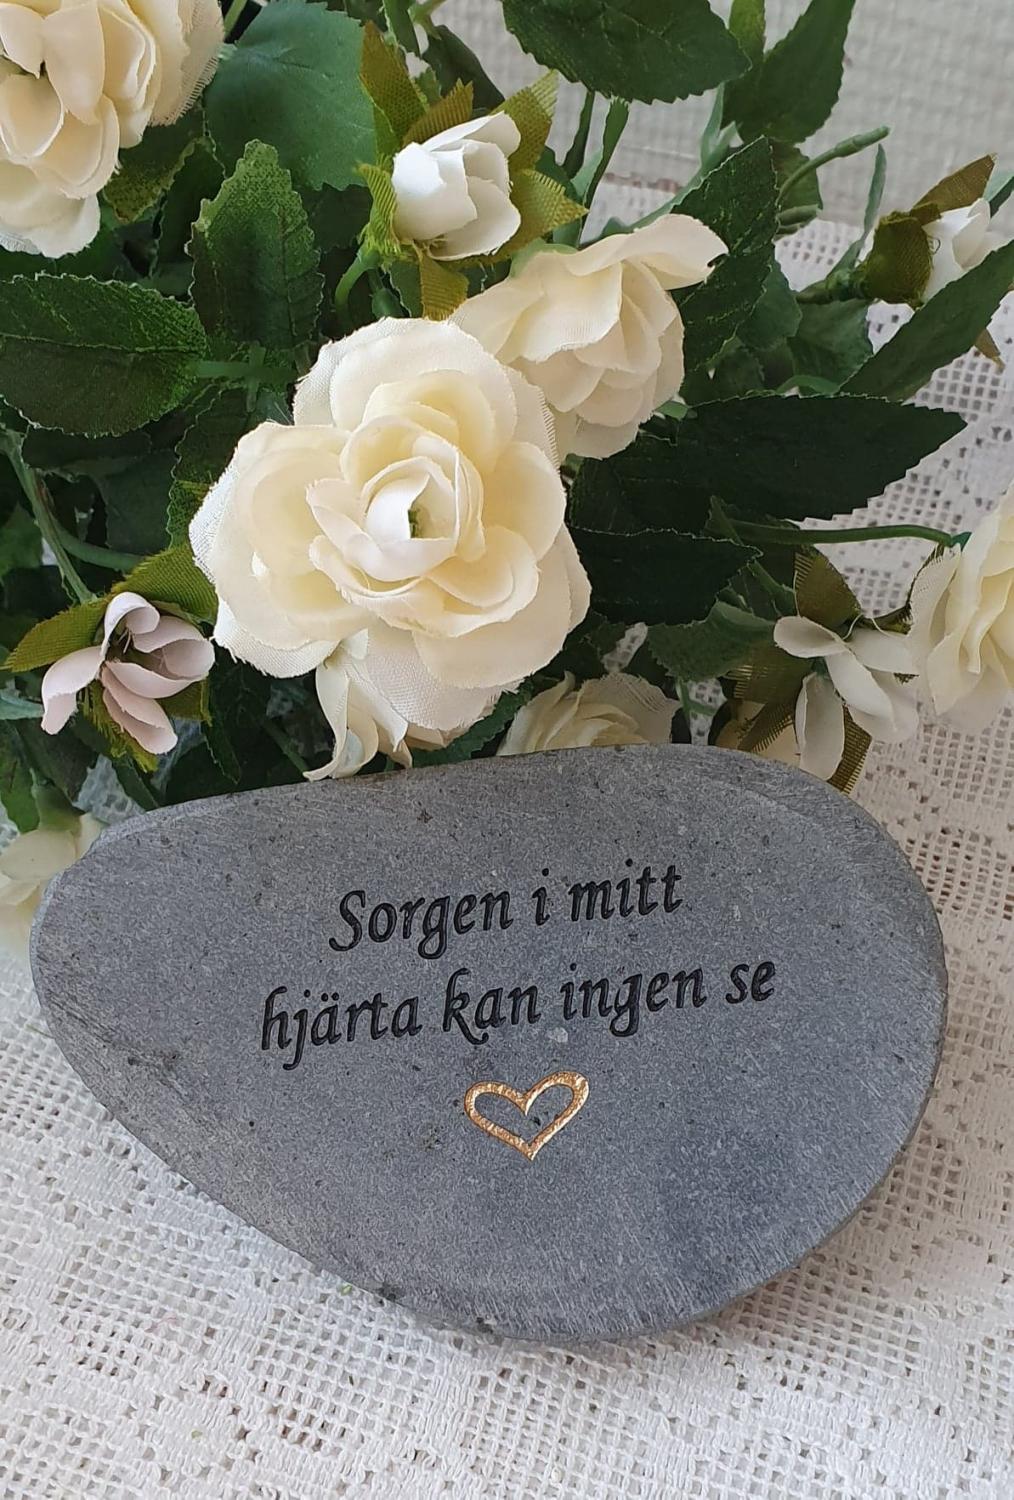 Sten Med Text - Sorgen I Mitt Hjärta Kan Ingen Se